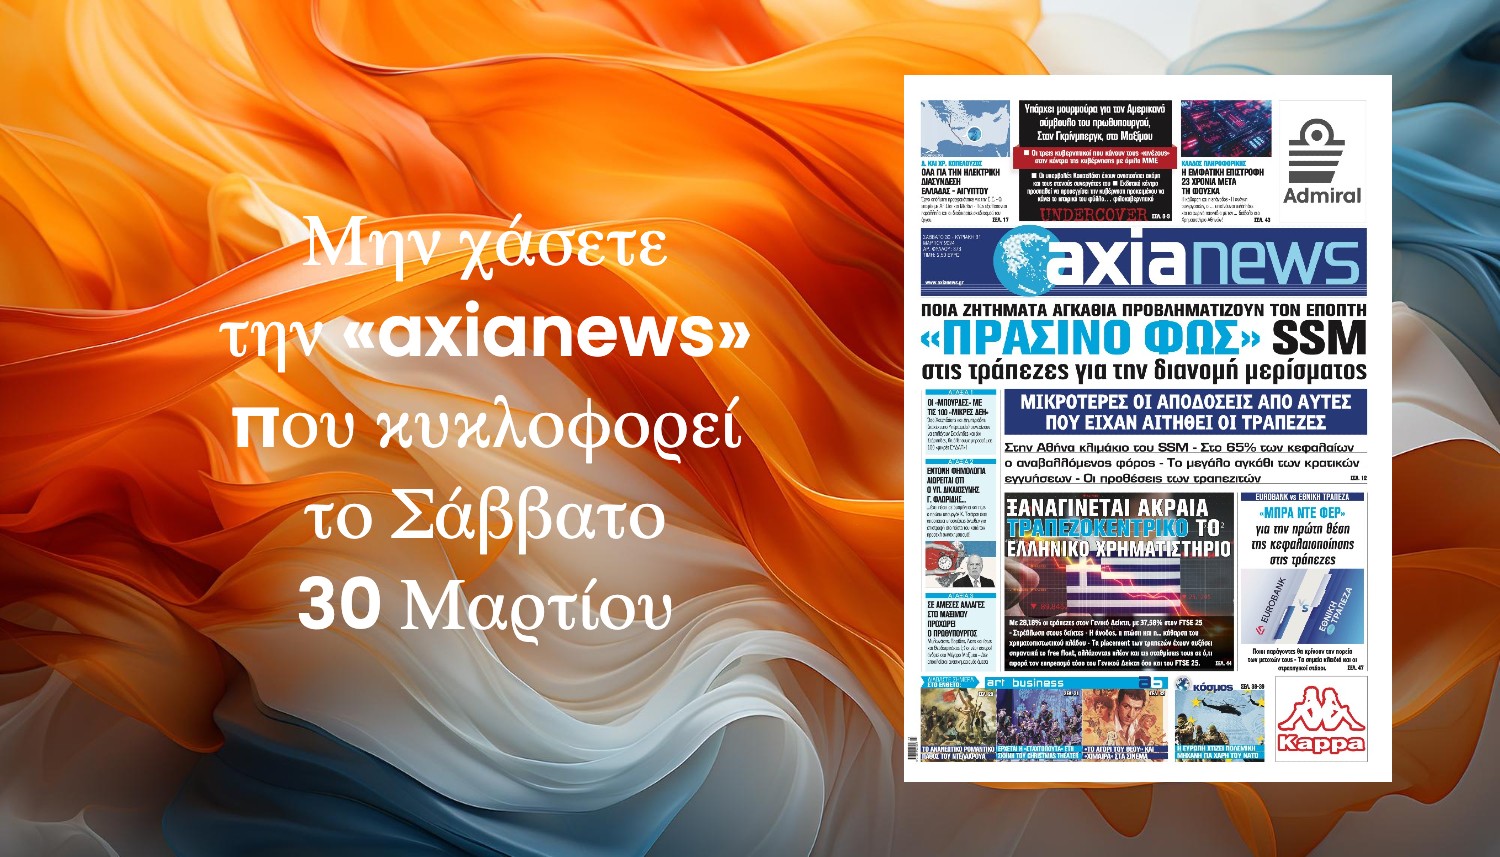 Μην χάσετε την «axianews» που κυκλοφορεί το Σάββατο 30 Μαρτίου 